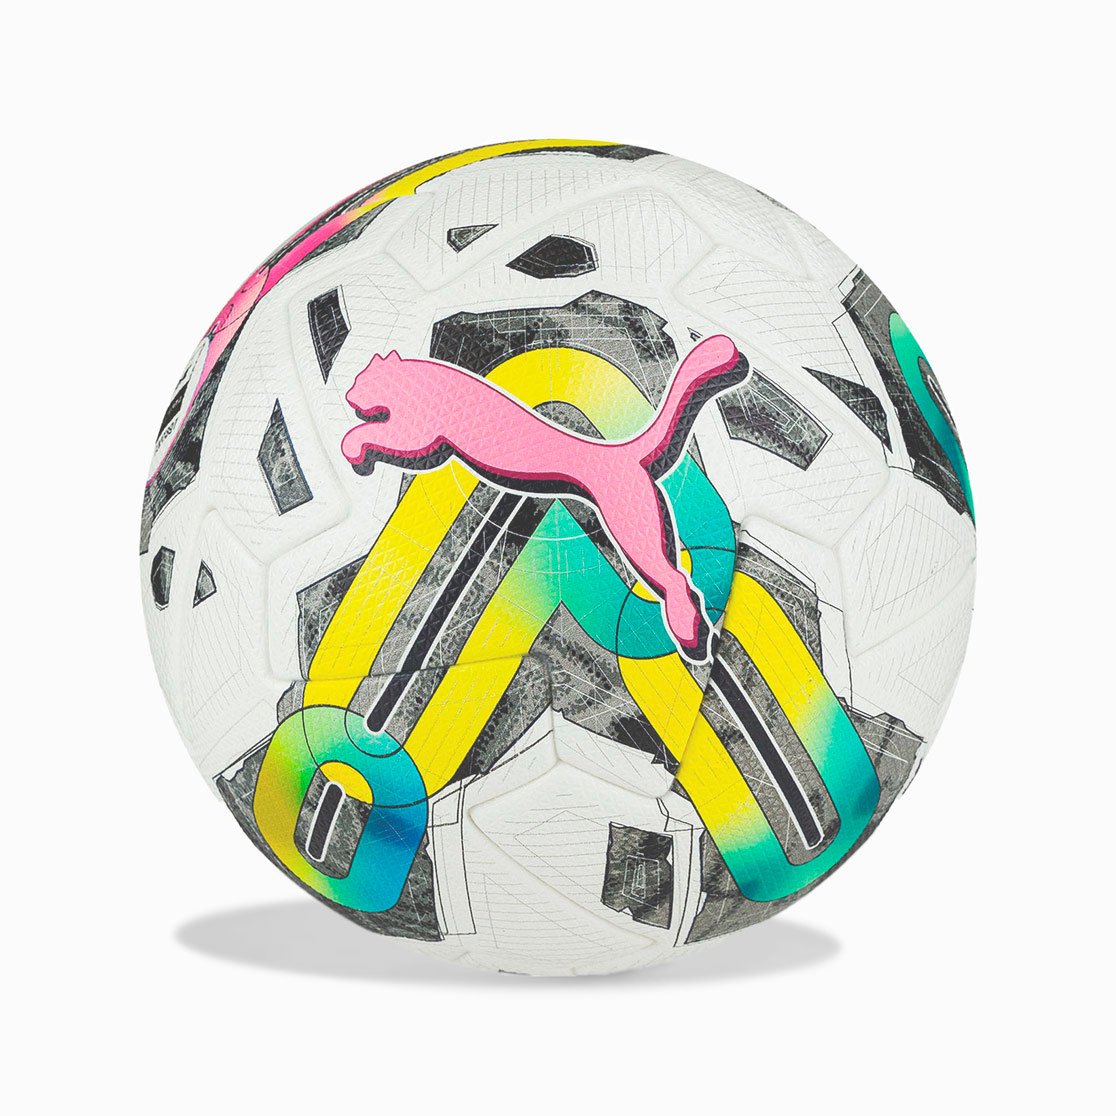 Мяч футбольный Puma Orbita 1 TB (FIFA Quality Pro) - Официальный мяч Мелбет-Первой лиги в сезоне 23/24